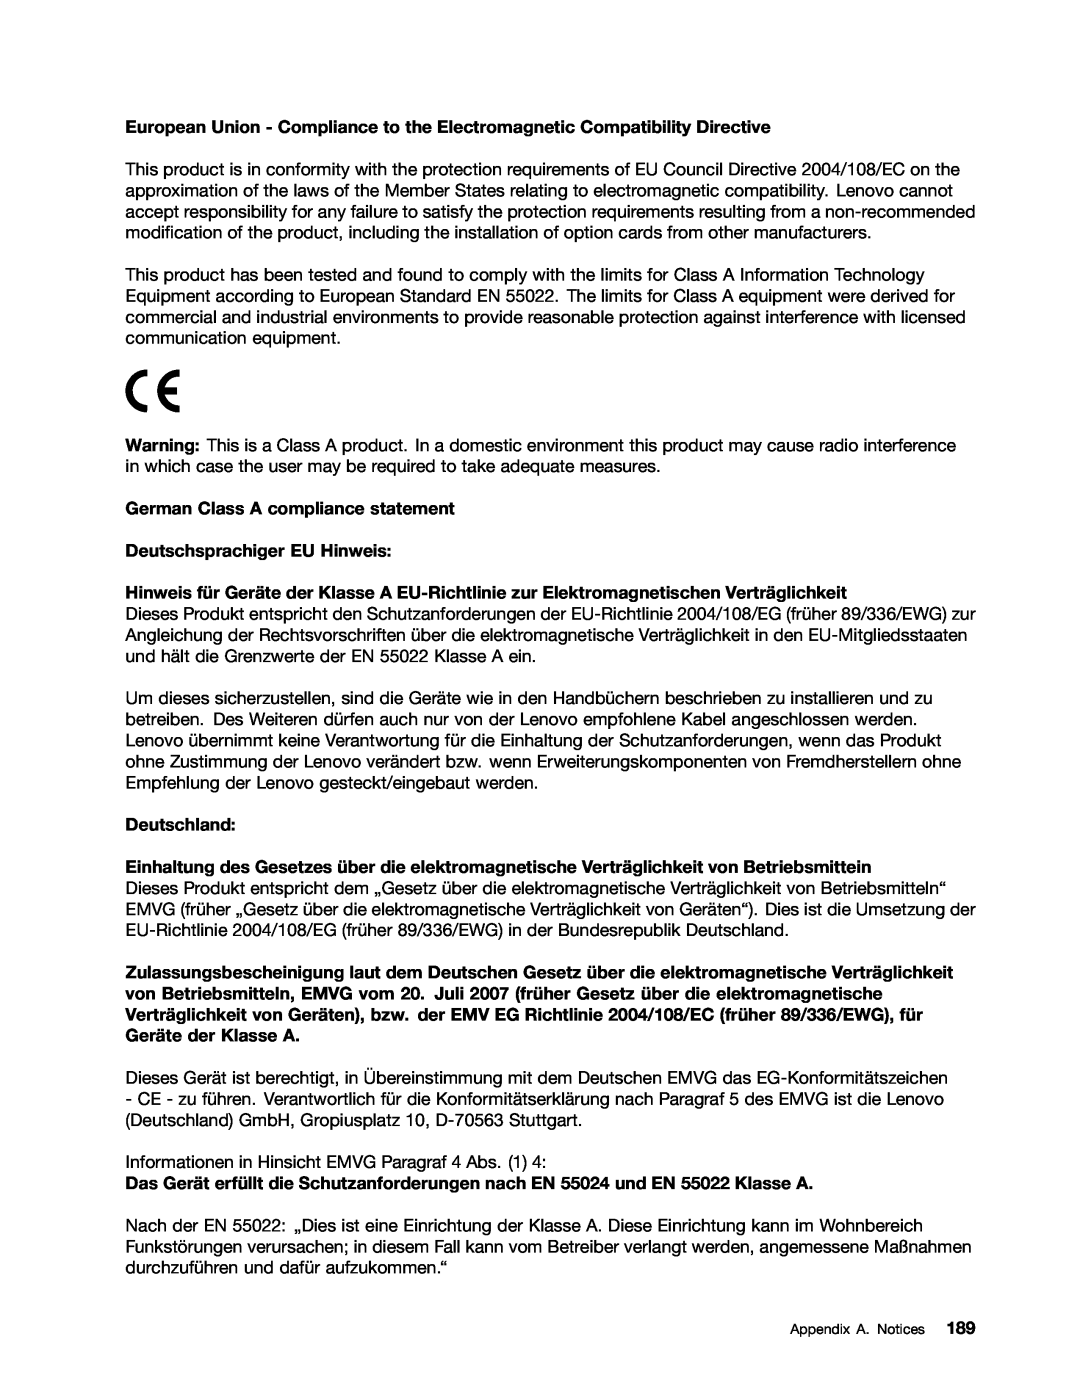 Lenovo 393, 387, 391, 389, 388, 441, 390, 392 manual German Class A compliance statement Deutschsprachiger EU Hinweis, Deutschland 